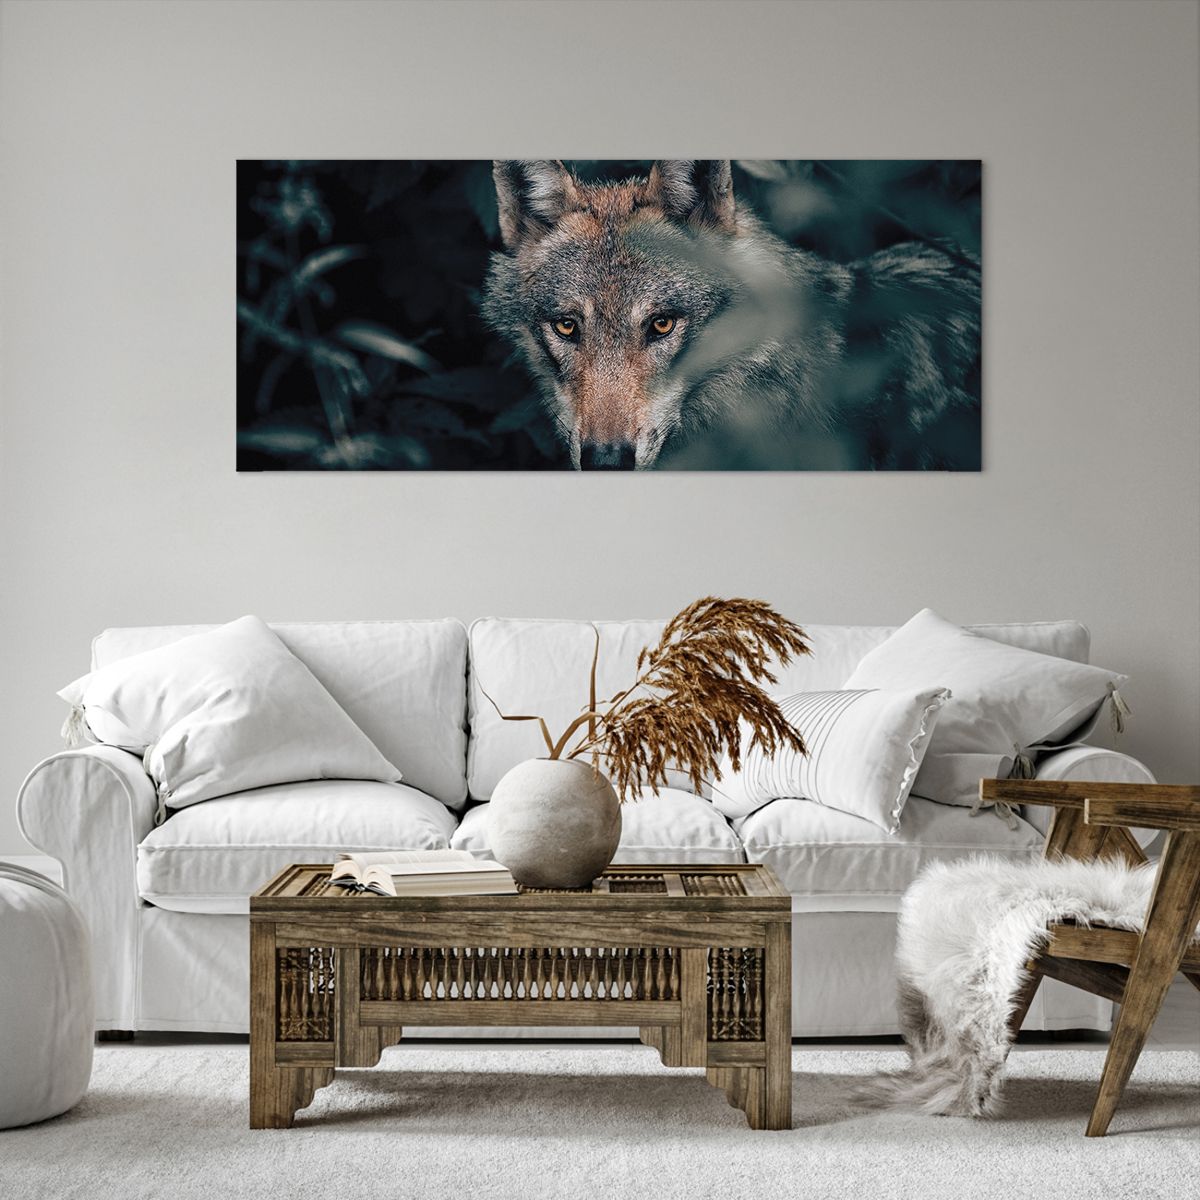 Bild auf Leinwand Wolf, Bild auf Leinwand Wald, Bild auf Leinwand Tiere, Bild auf Leinwand Raubtier, Bild auf Leinwand Natur